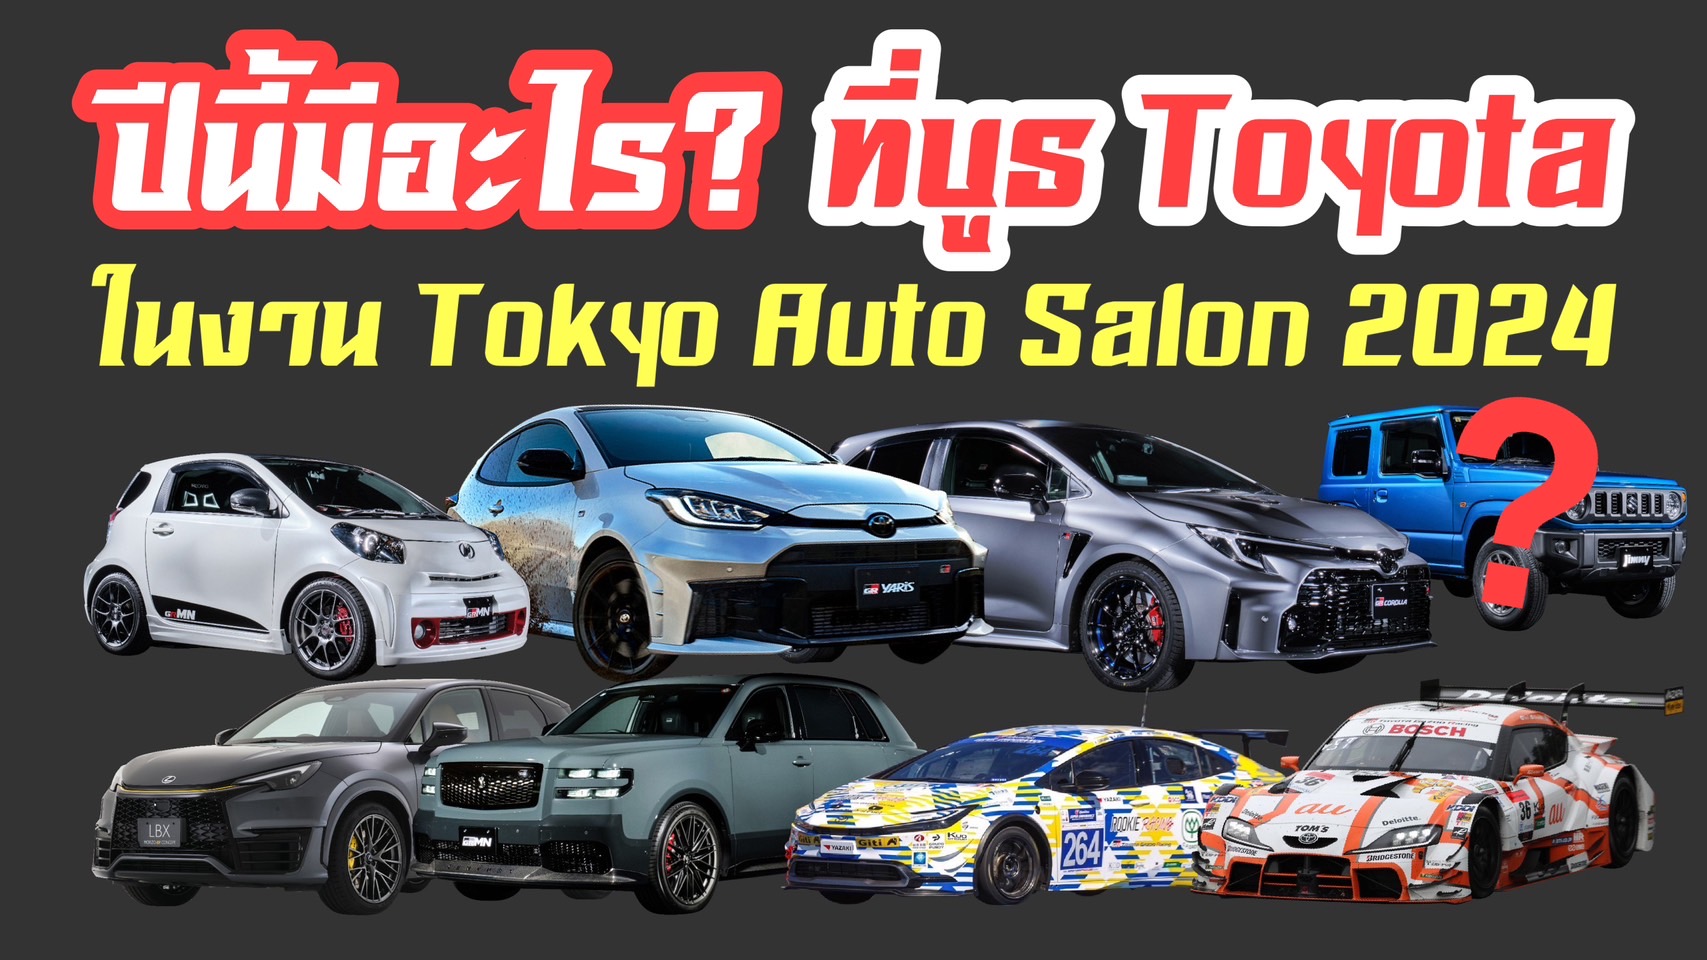 จัดเต็ม!! เจาะลึกบรรยากาศบูธ Toyota ภายในงาน Tokyo Auto Salon 2024 ครบเครื่องเรื่องยนตกรรม 